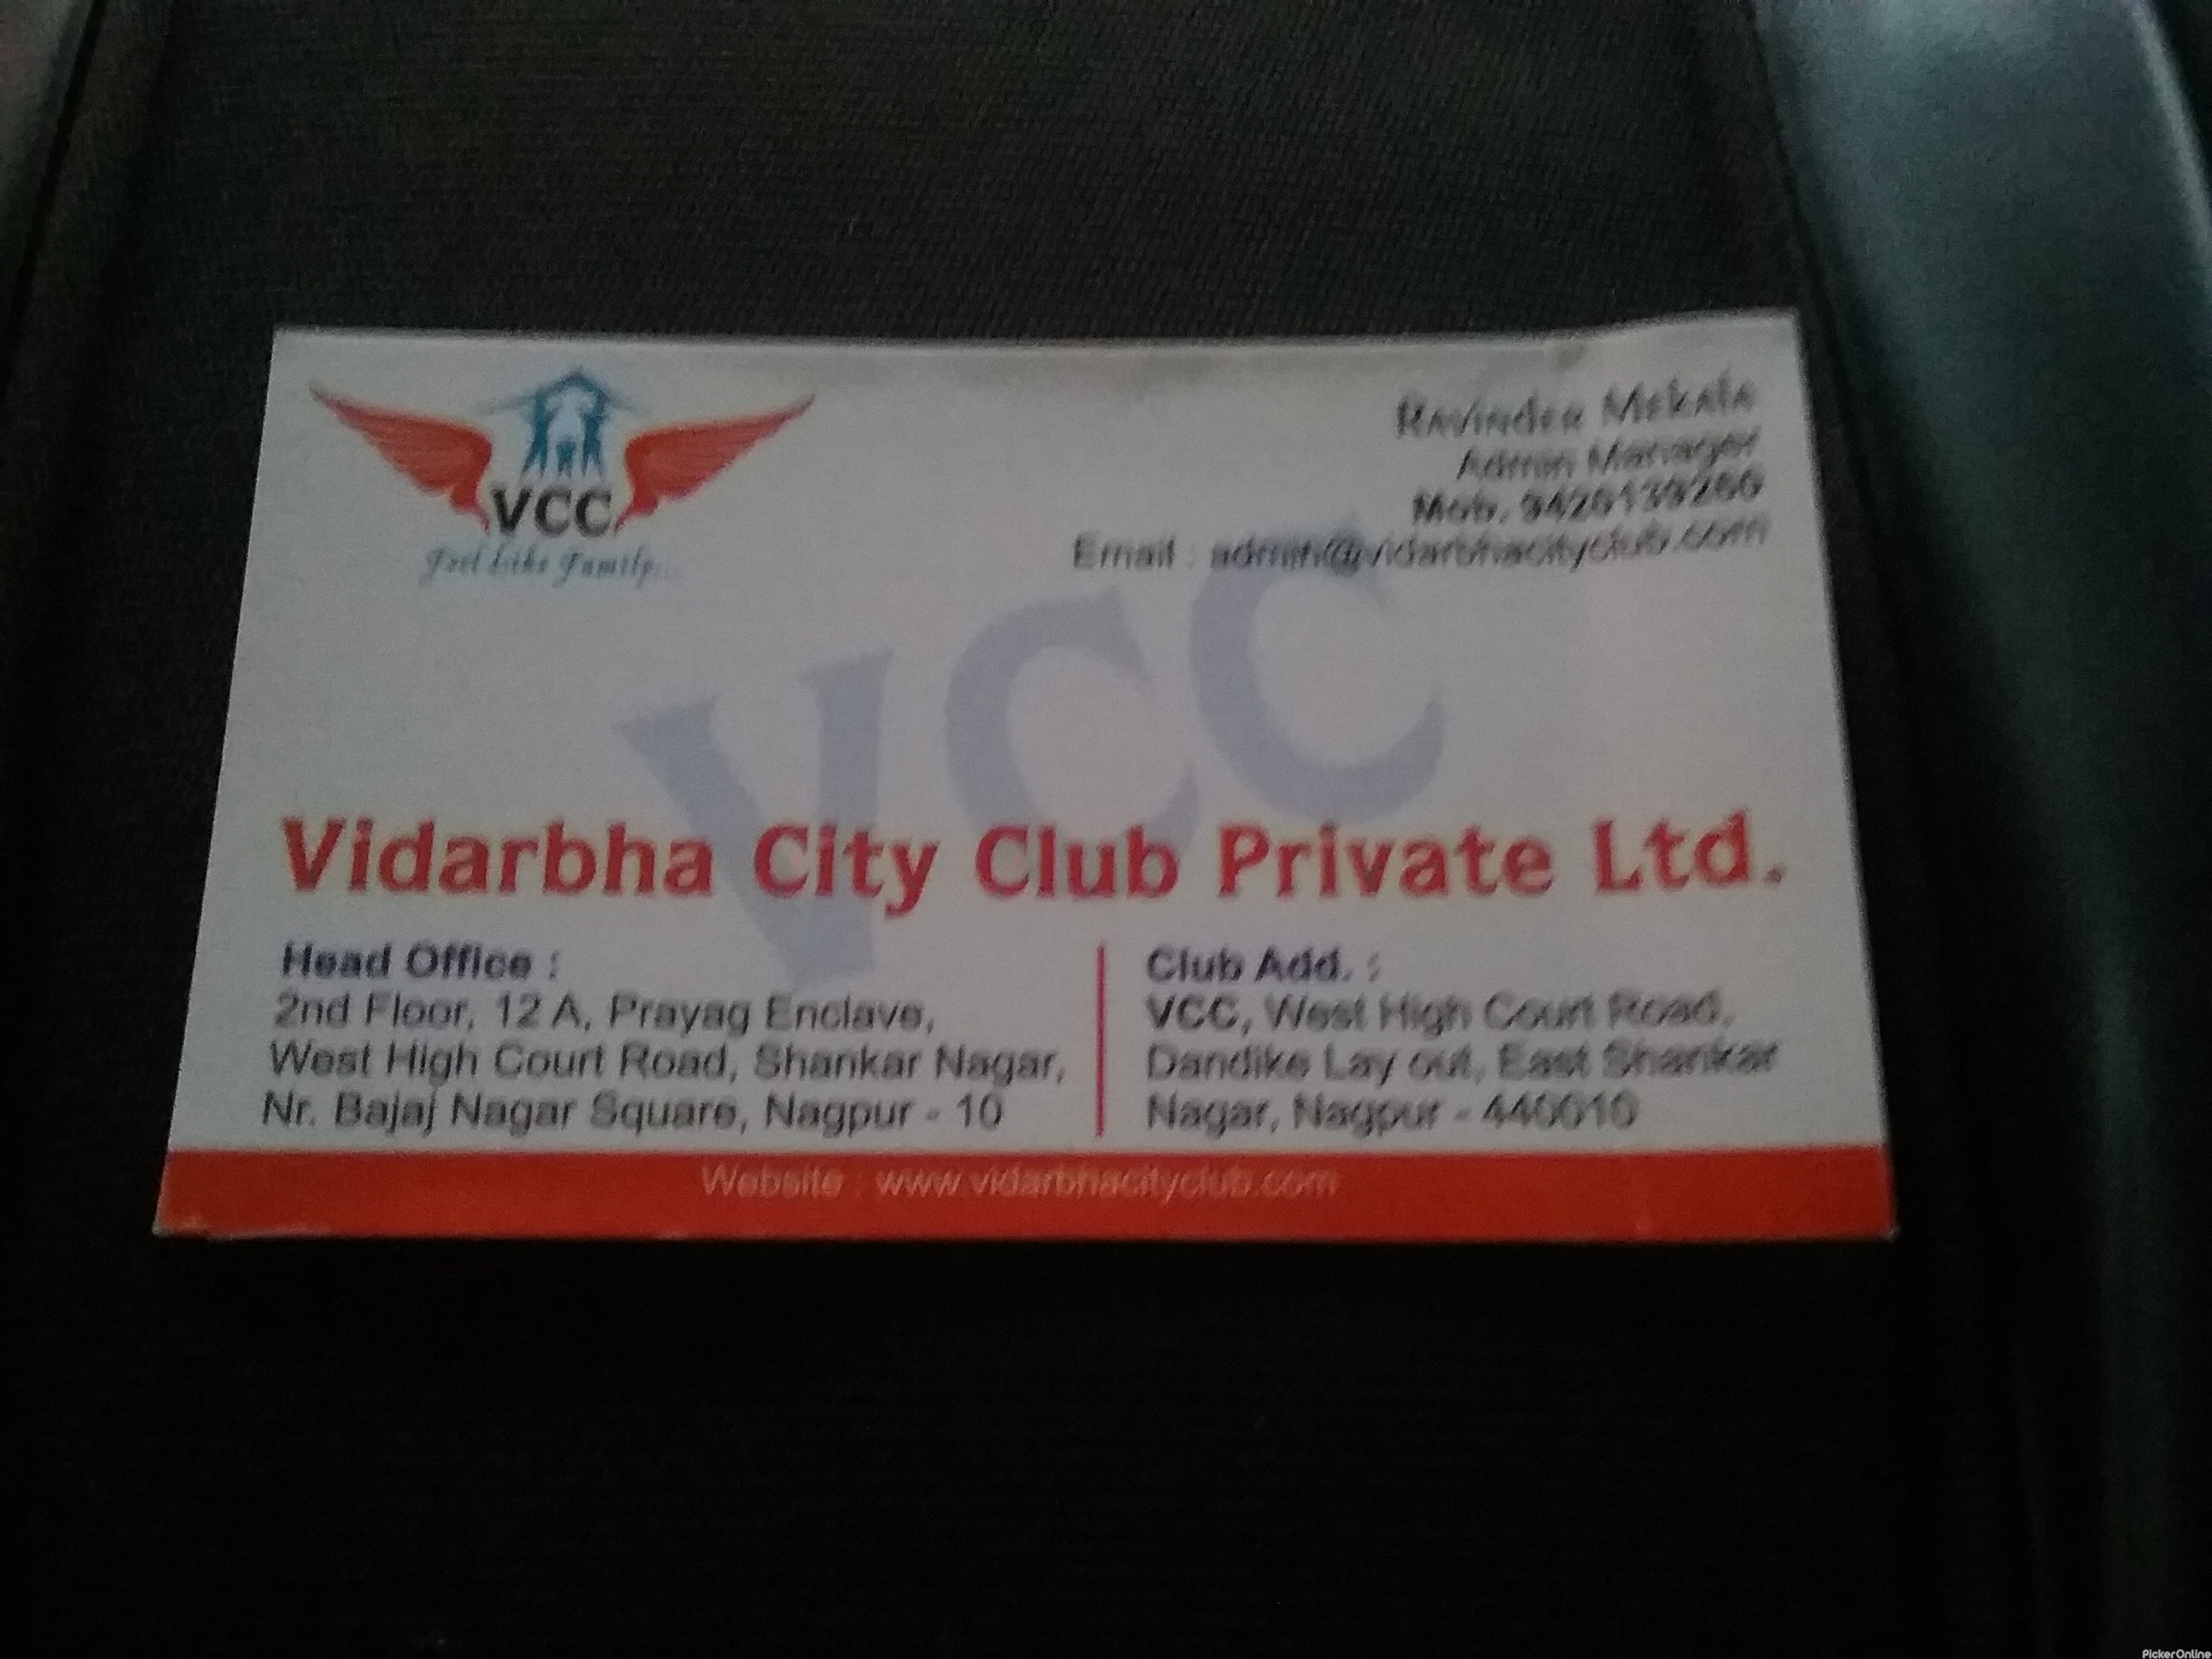 Vidarbha City Club Pvt Ltd, Shankar Nagar, Nagpur